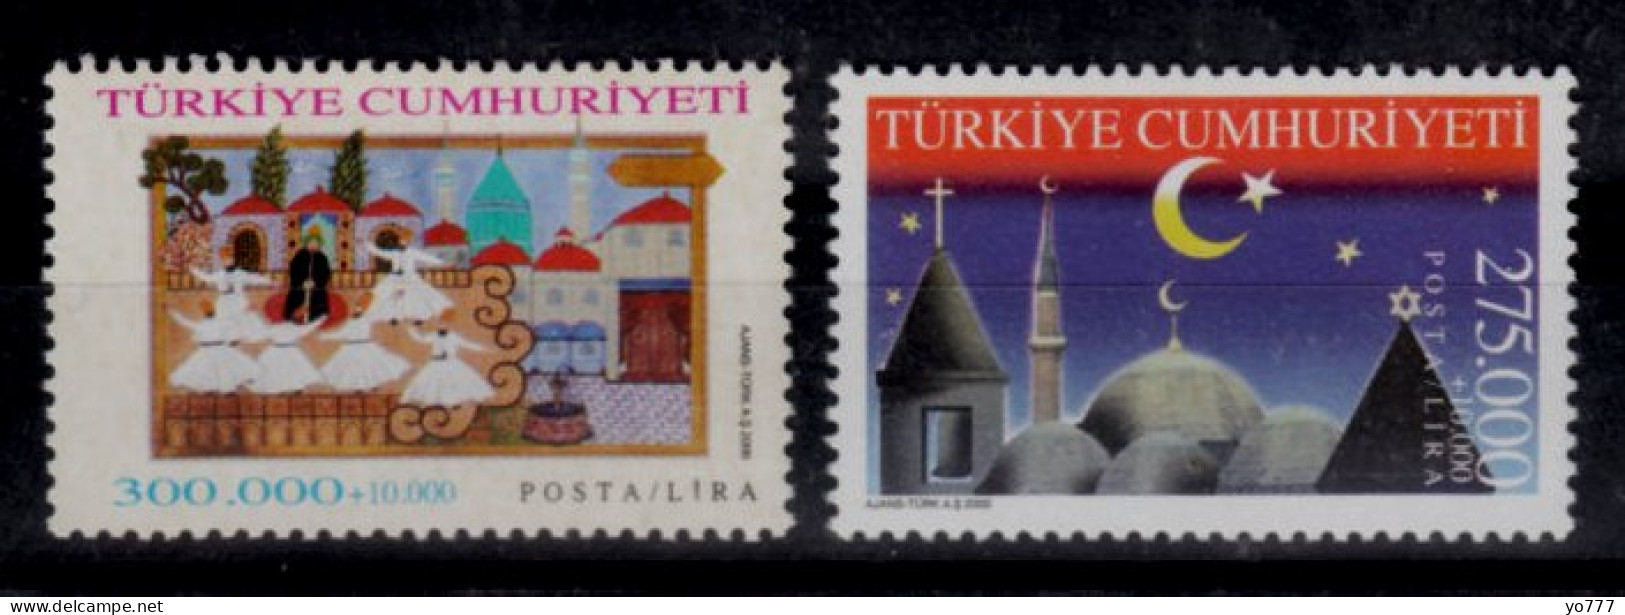 (3218-19) TURKEY FAITH TOURISM MNH** - Ongebruikt